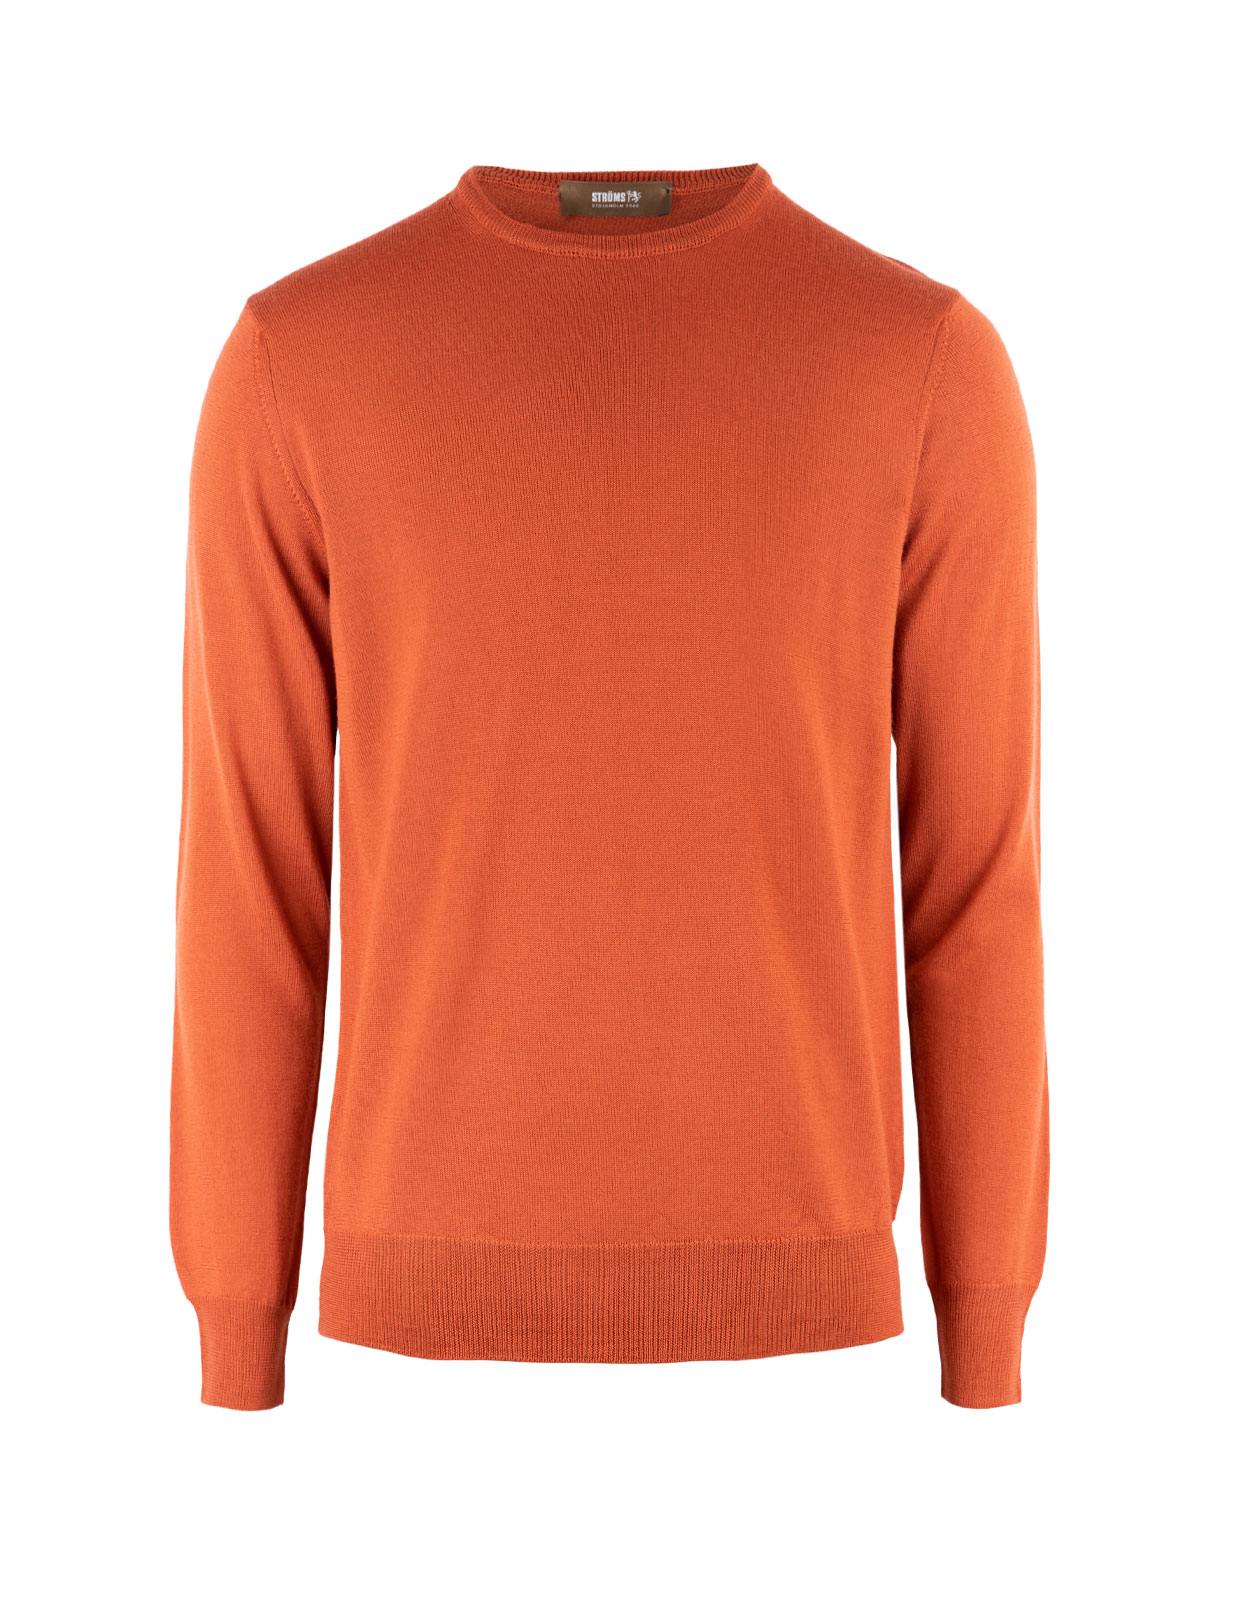 Crew Neck Merino Sweater Spice Orange